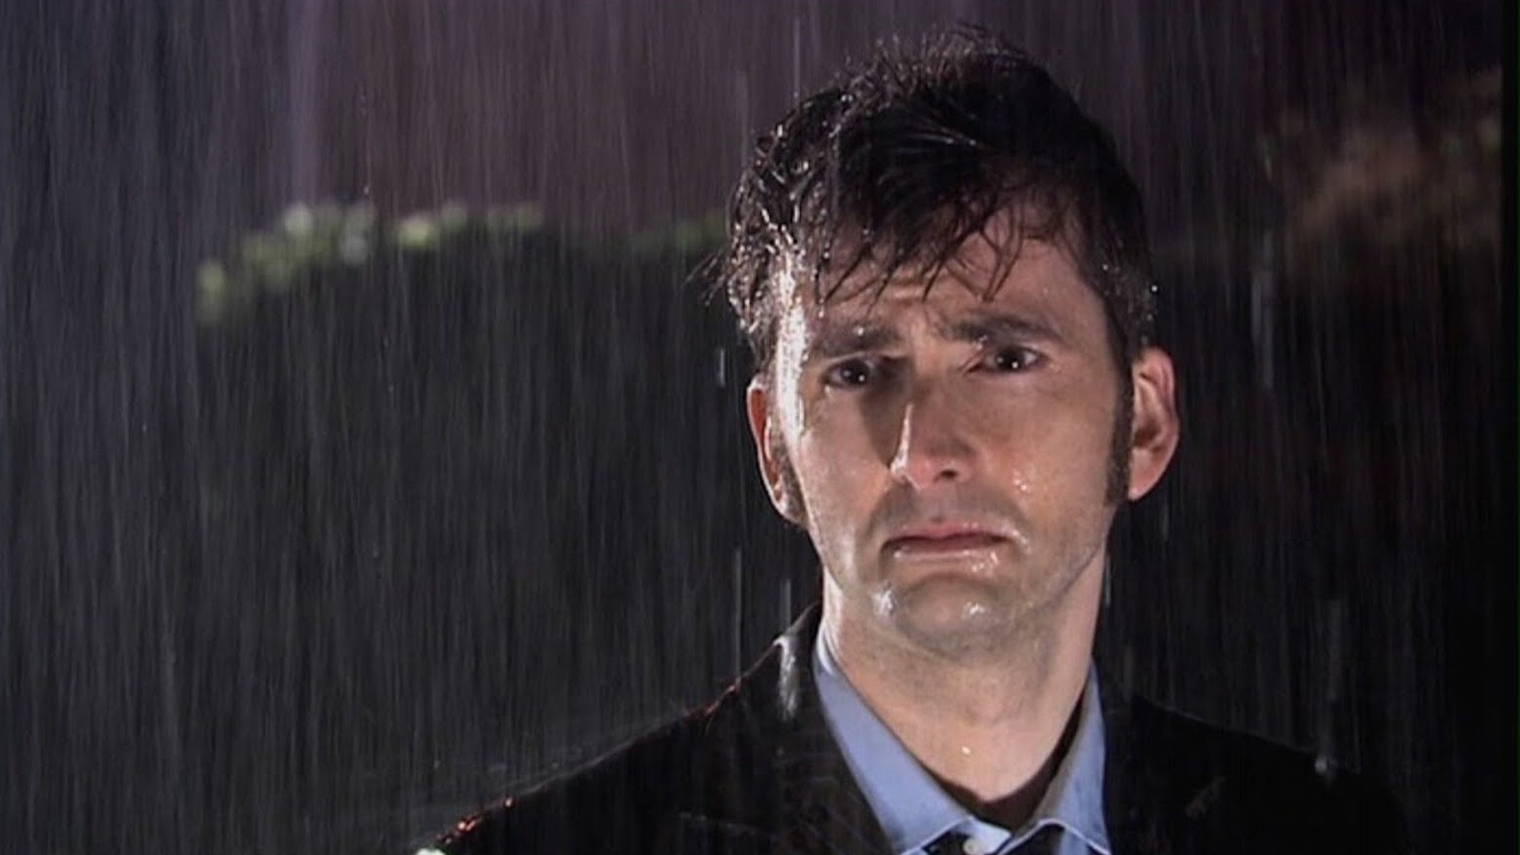 Десятый Доктор в исполнении Дэвида Теннанта справедливо считается одним из лучших. В герое отлично совмещаются безрассудство и трагизм